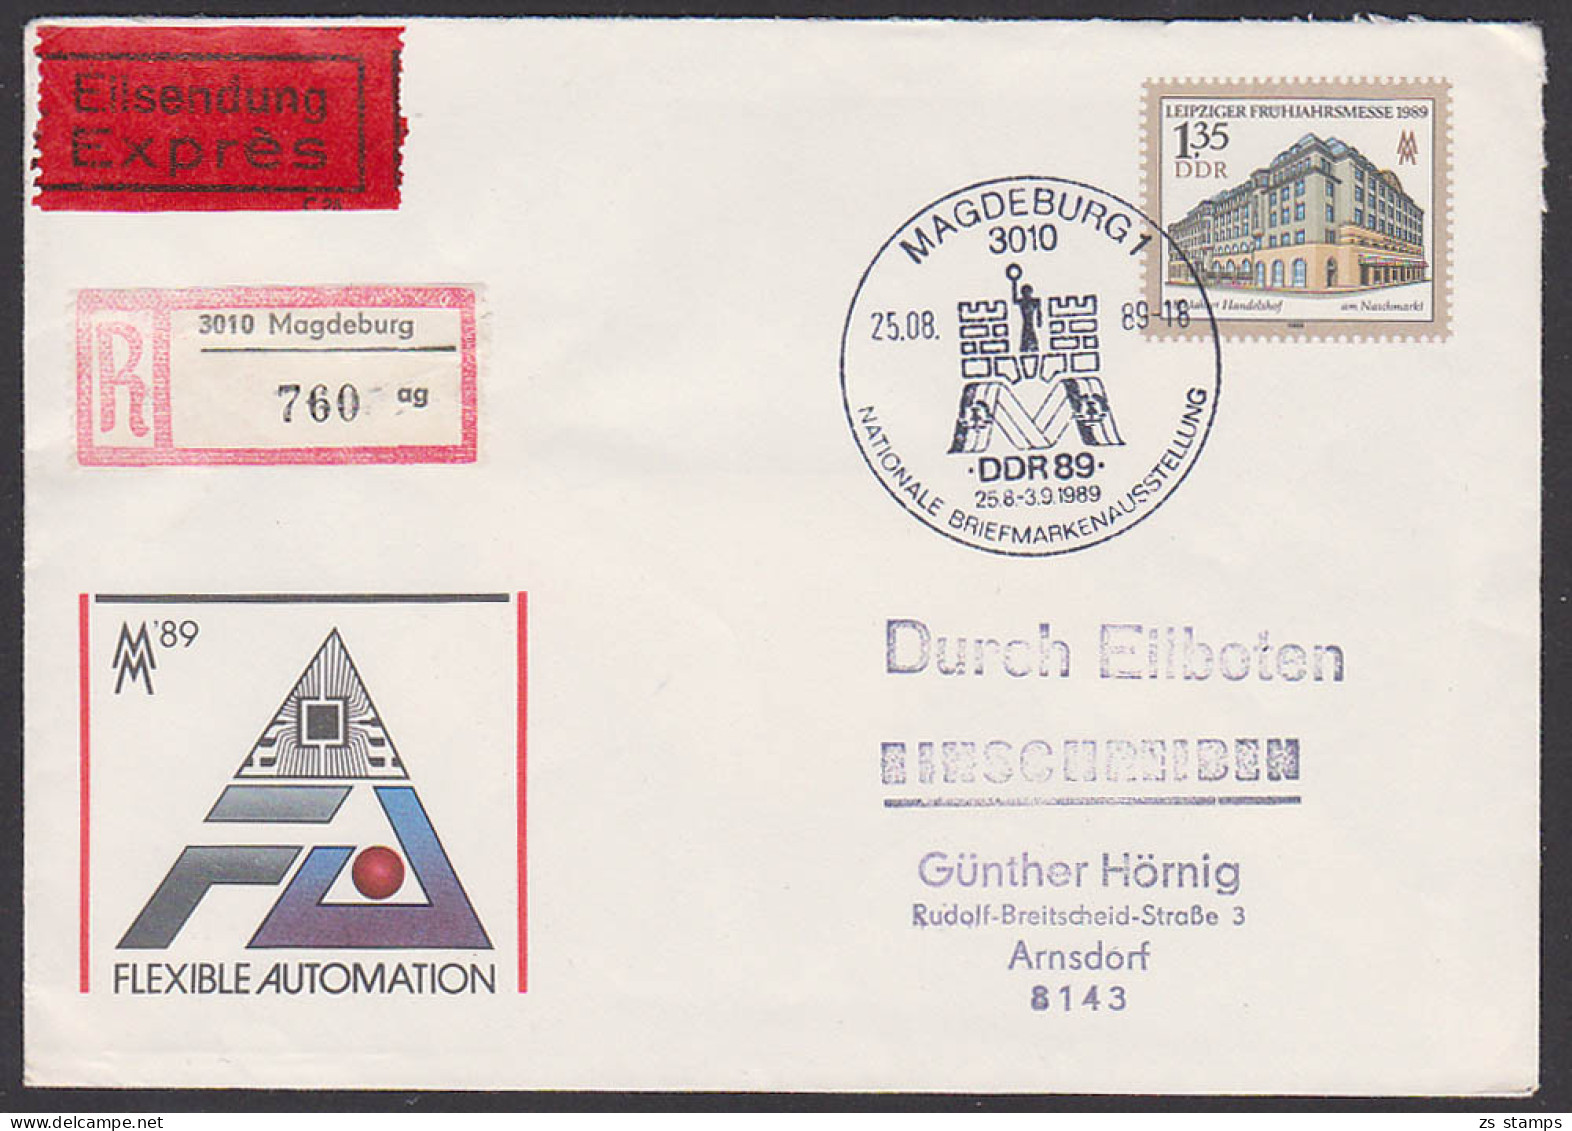 Magdeburg Ausstellung DDR U9, Rs. Eing.-St., Handelshof Am Naschmarkt Leipziger Frühjahrsmesse 1989 Eil-R-Brief  - Enveloppes - Oblitérées